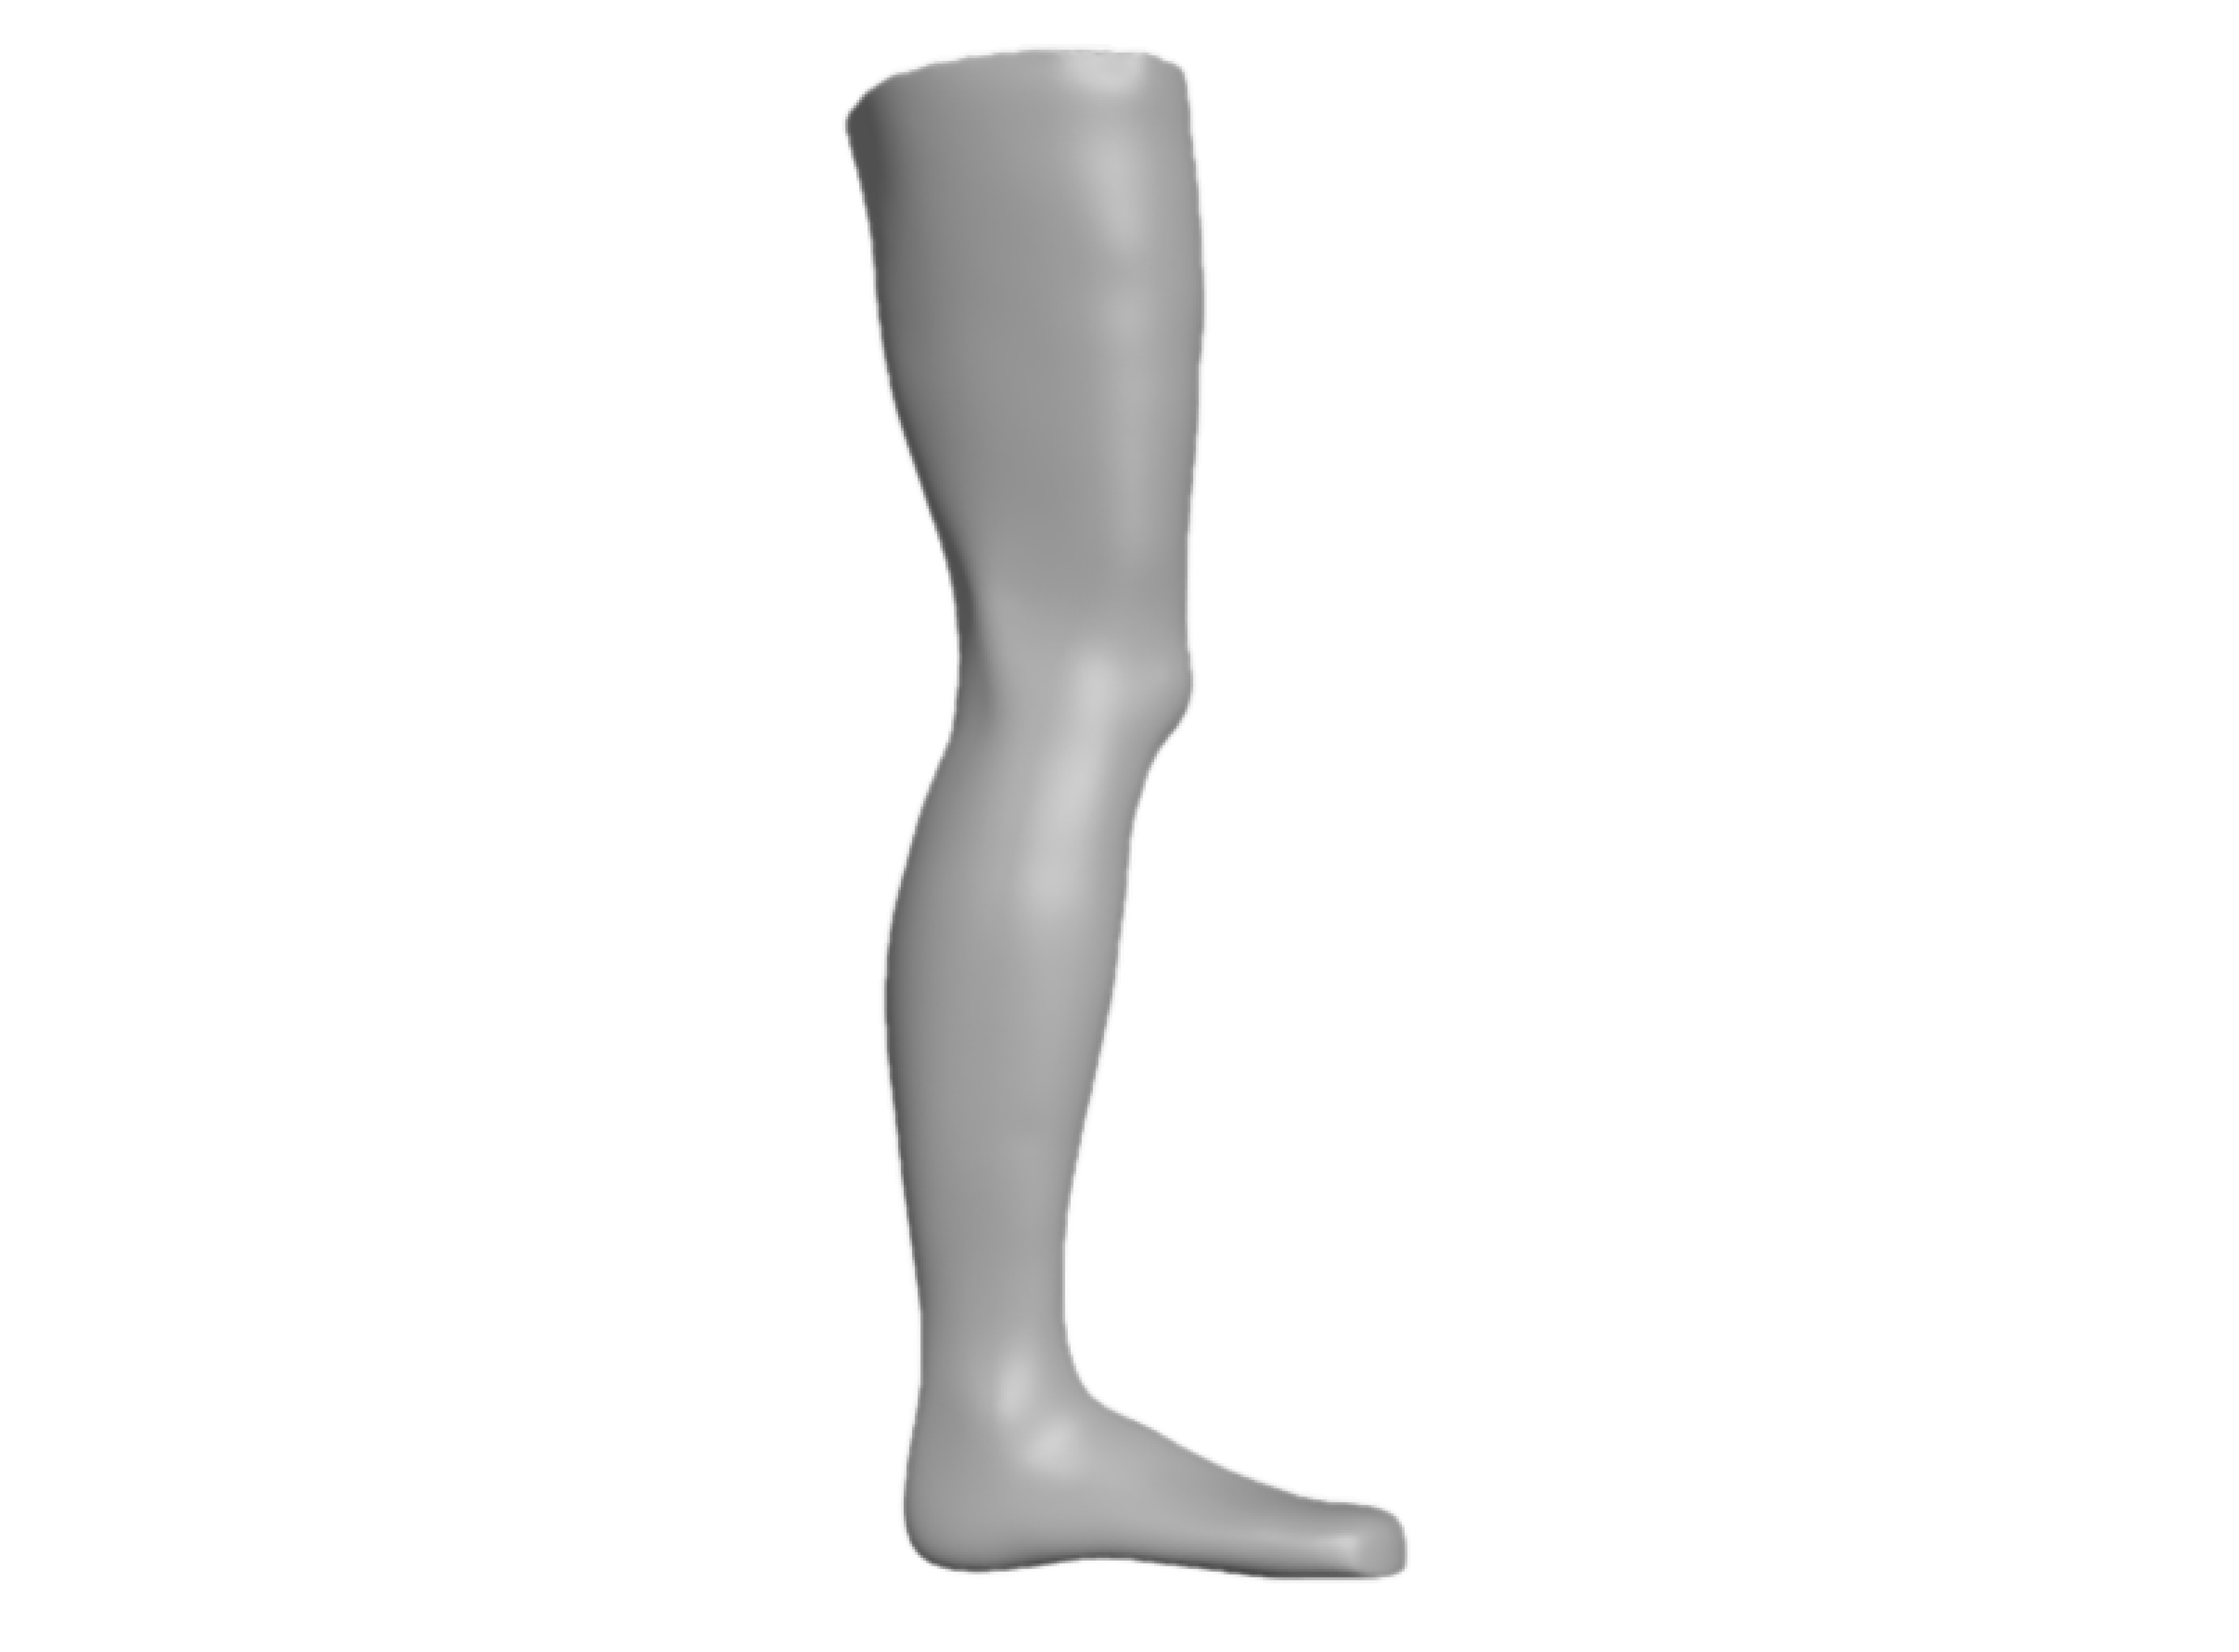 KAFO, Knie-Knöchel-Fuß-Orthese, Positiv, Hartschaum Oder MDF